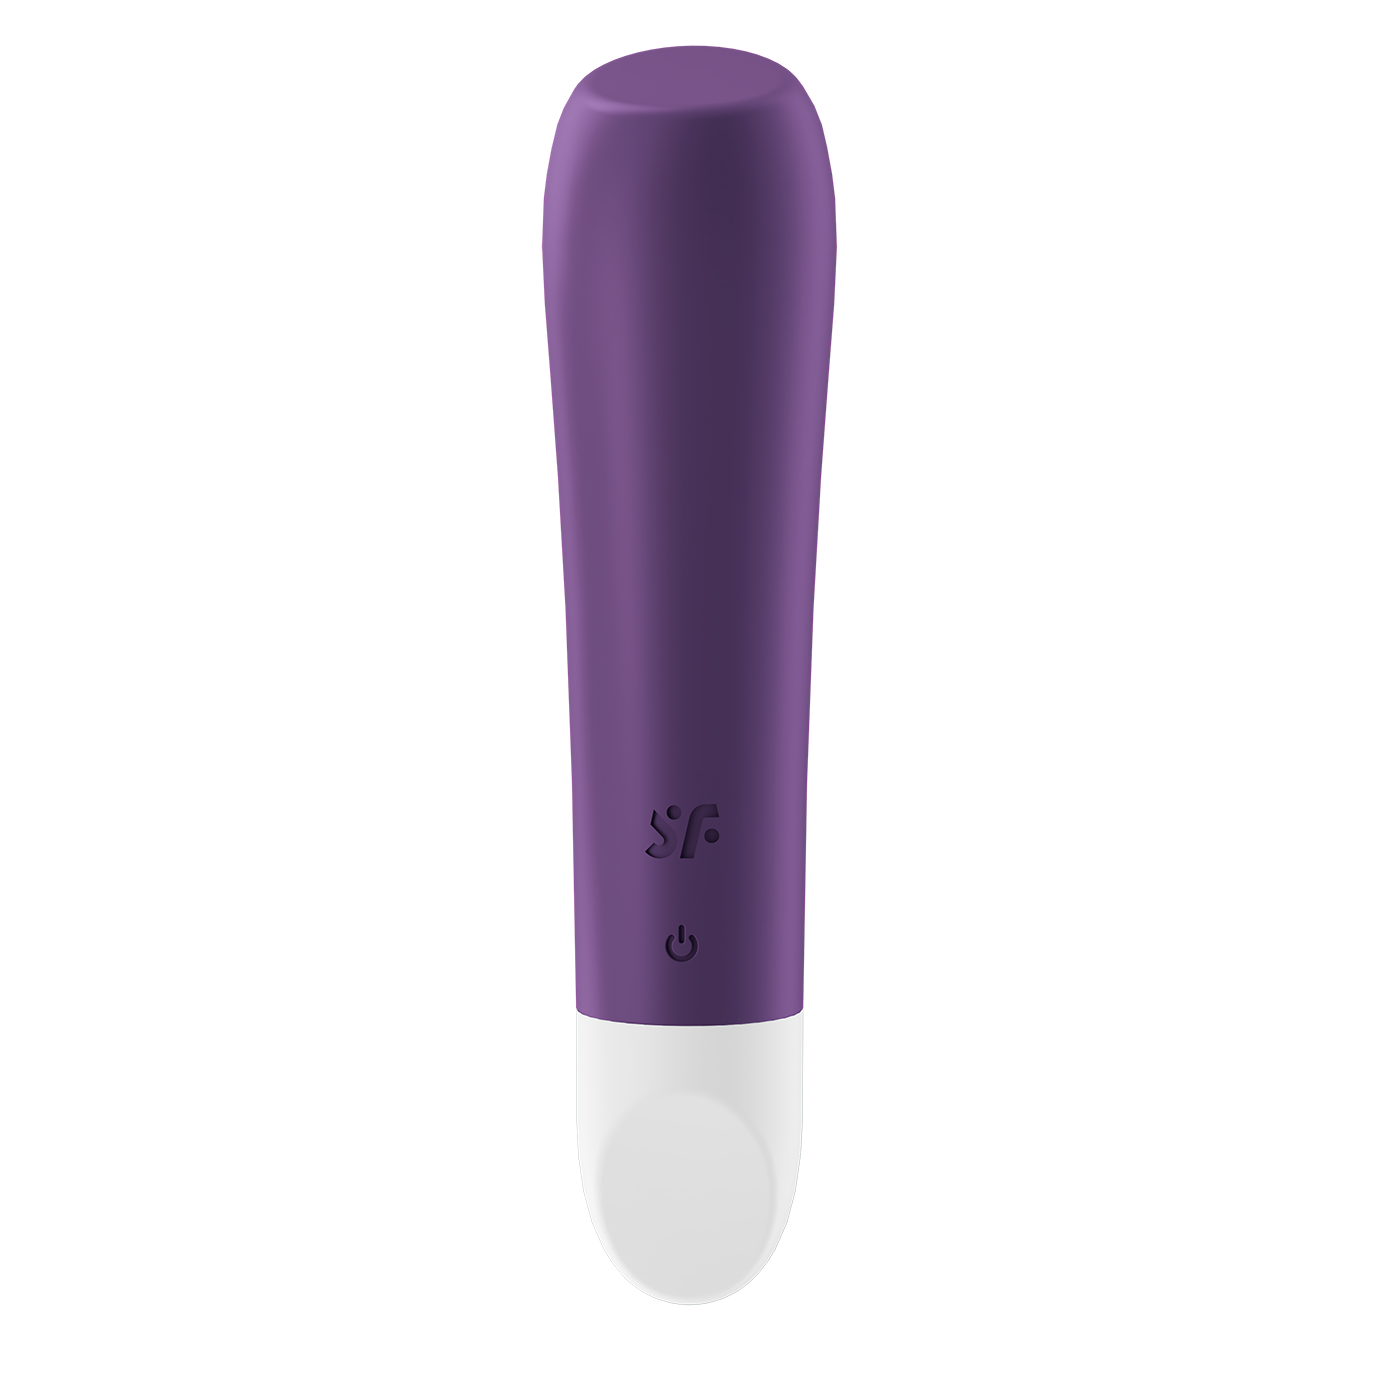 Мини-вибратор Satisfyer Ultra Power Bullet 2, фиолетовый